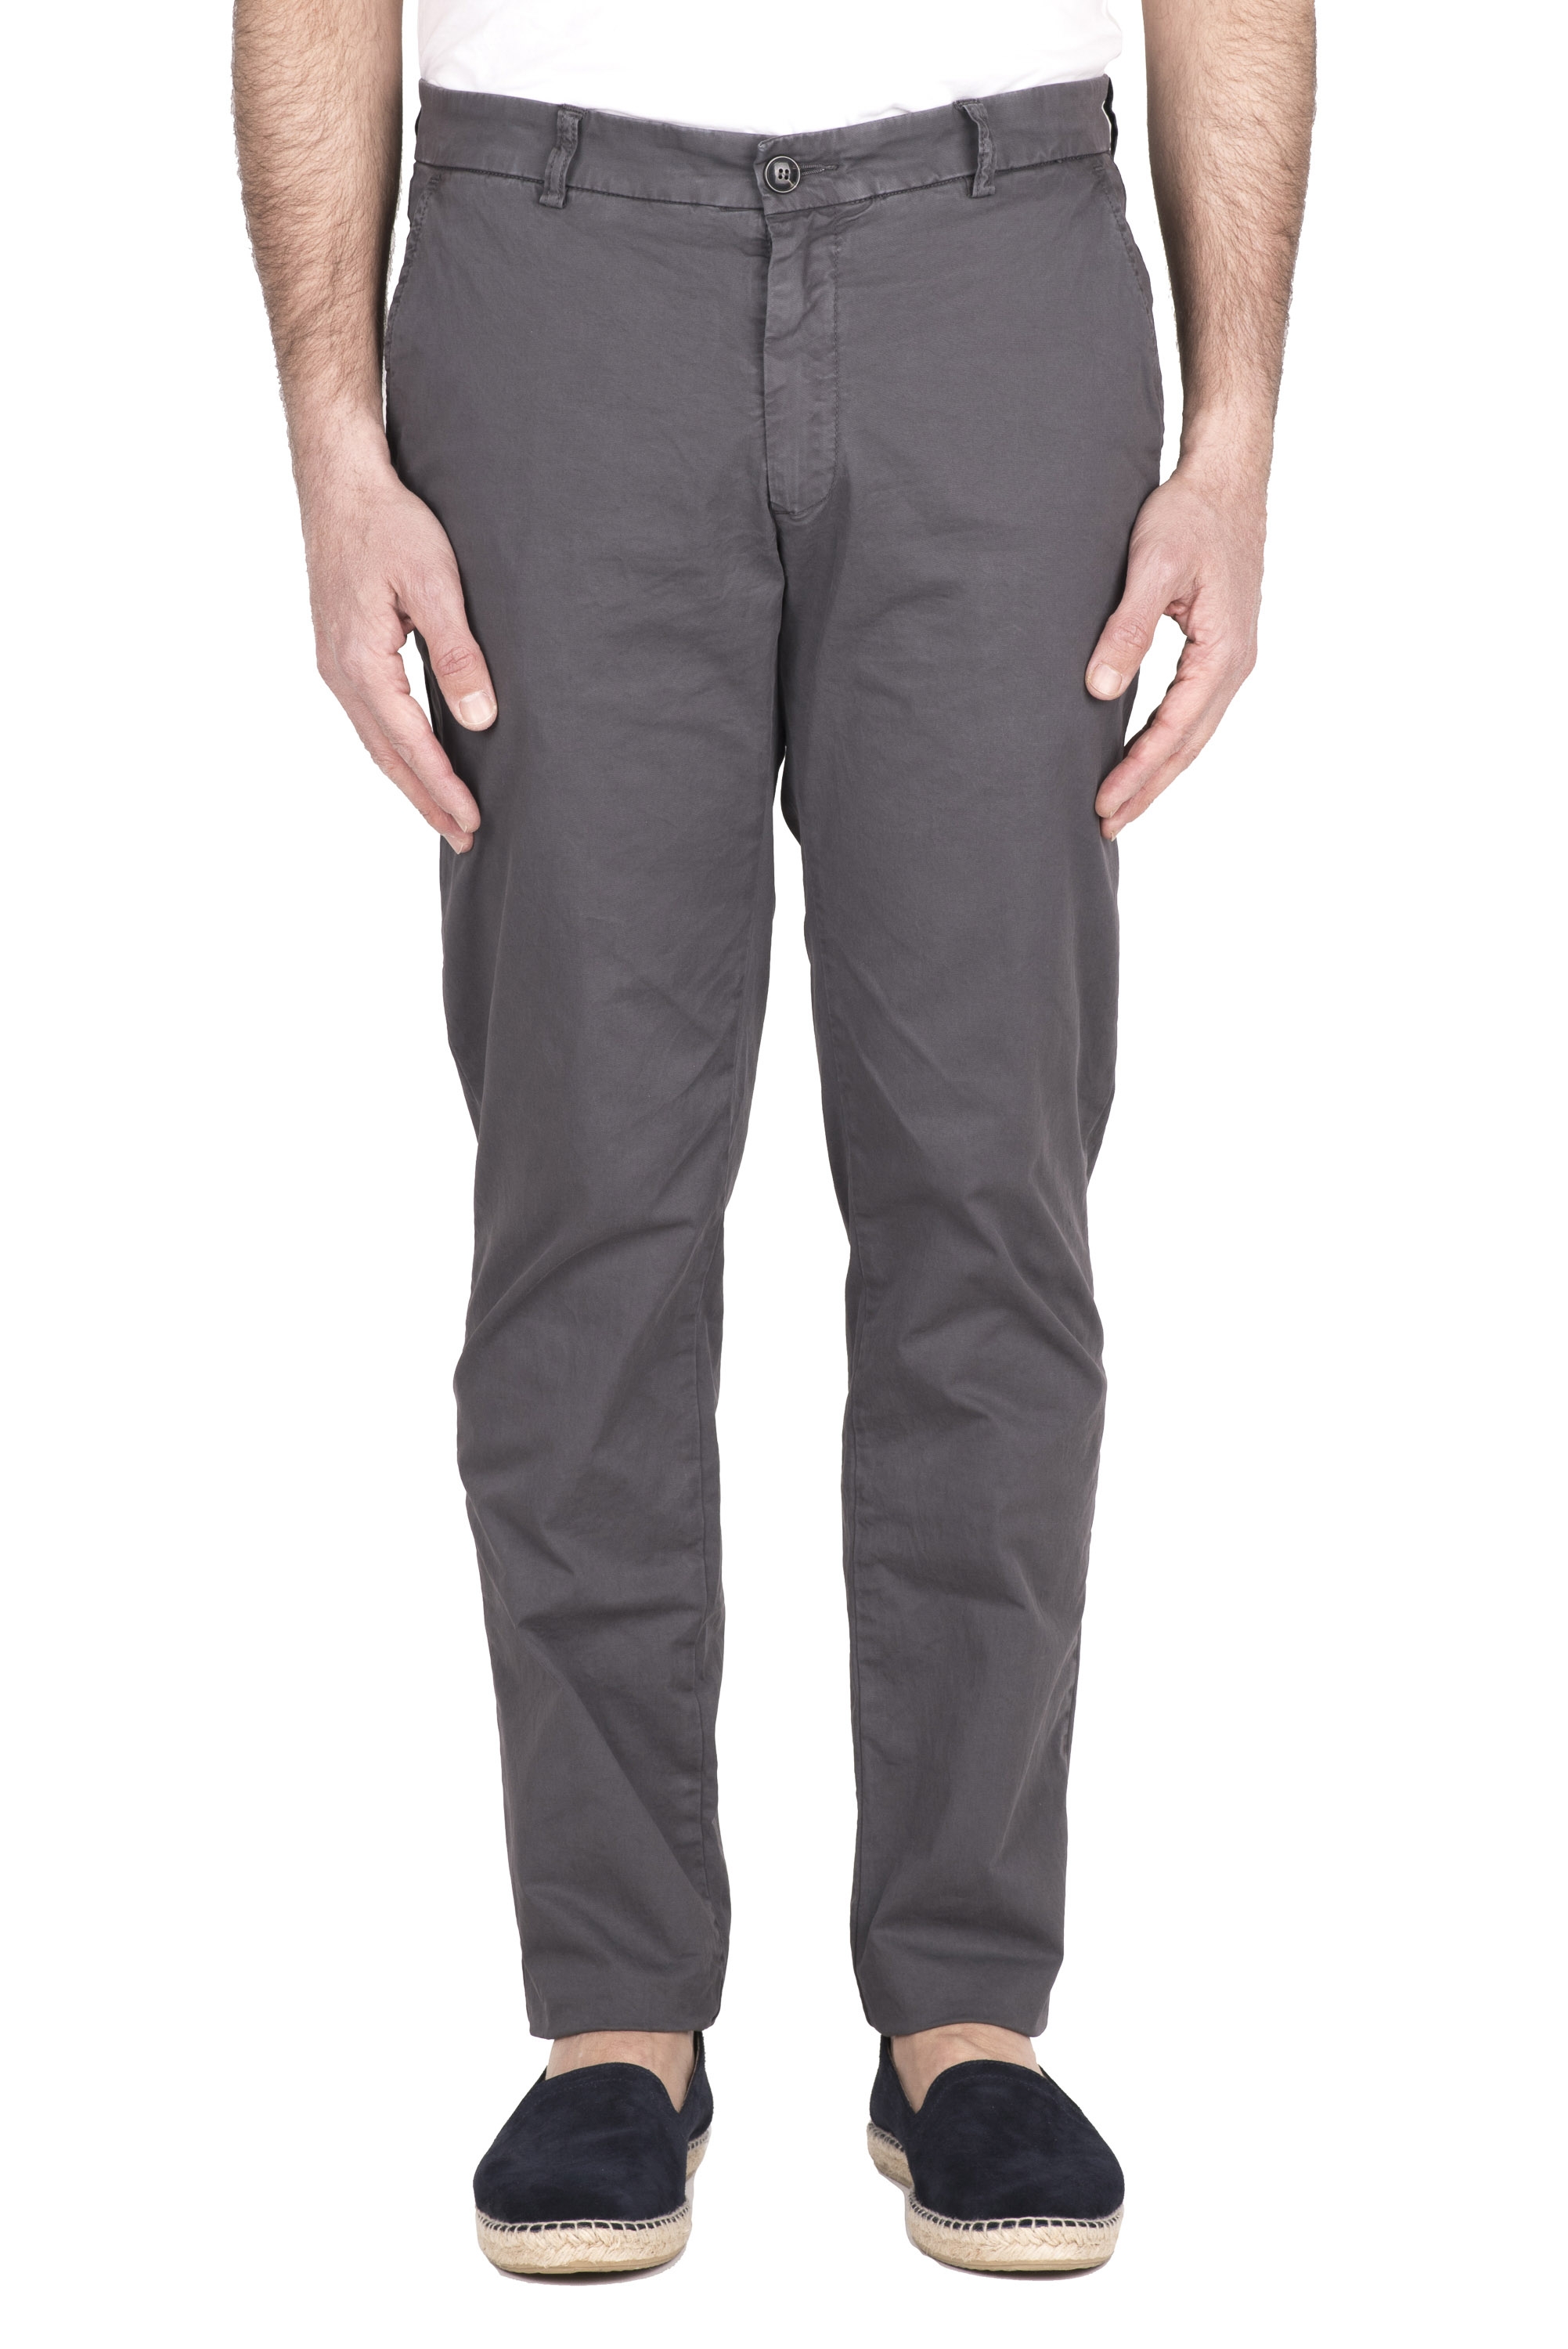 SBU 03251_2021SS Pantalón chino clásico en algodón elástico gris 01